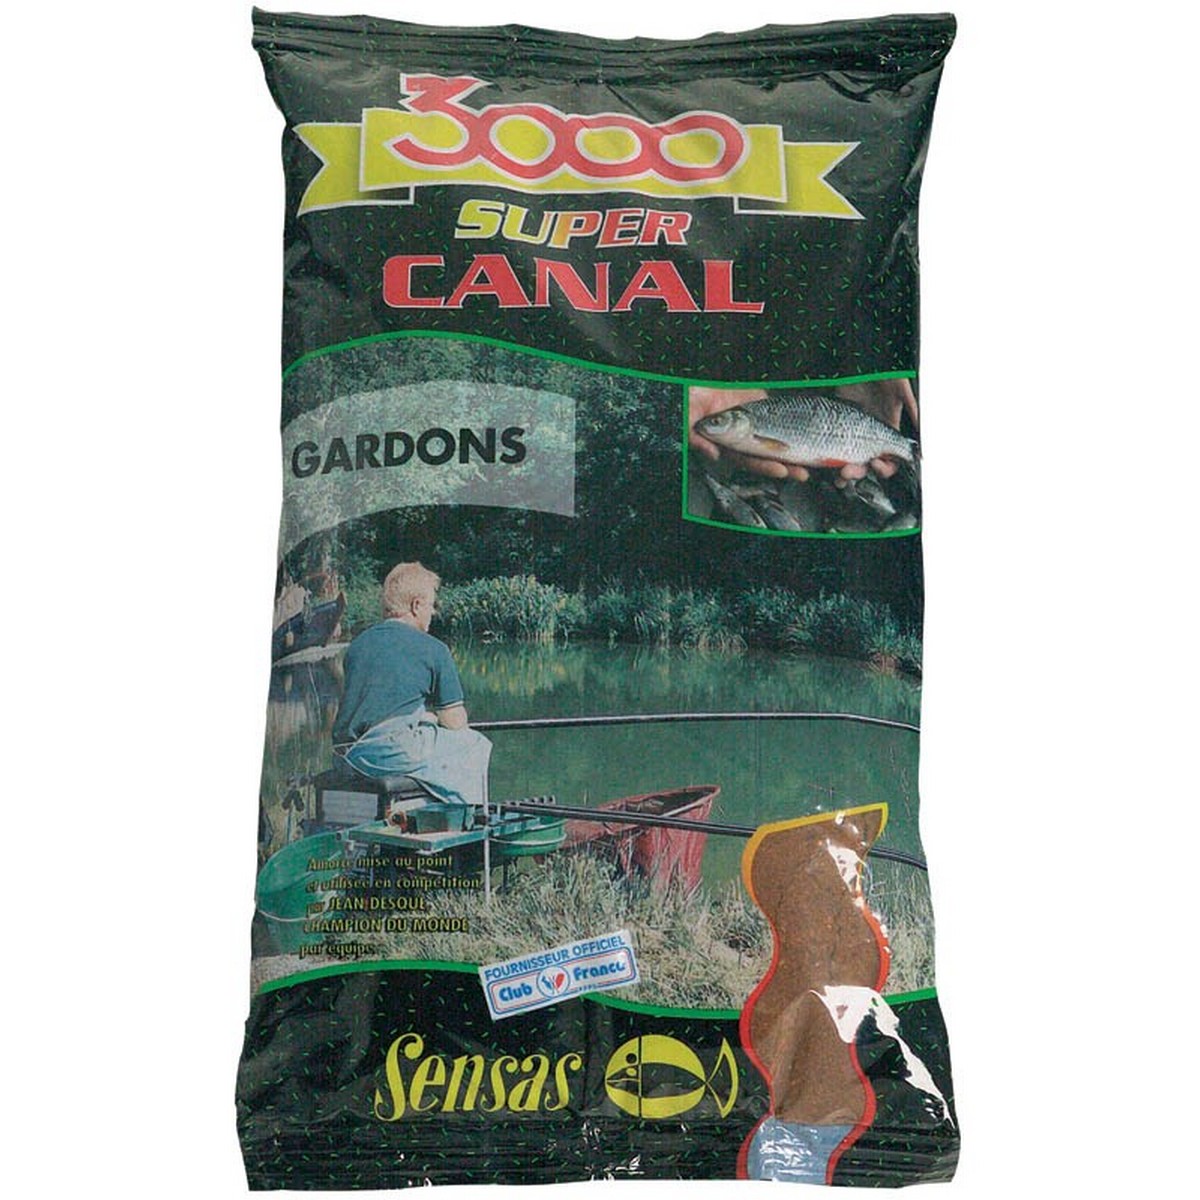 Захранка за риболов Sensas 3000 Super Canal Gardons(Roach)